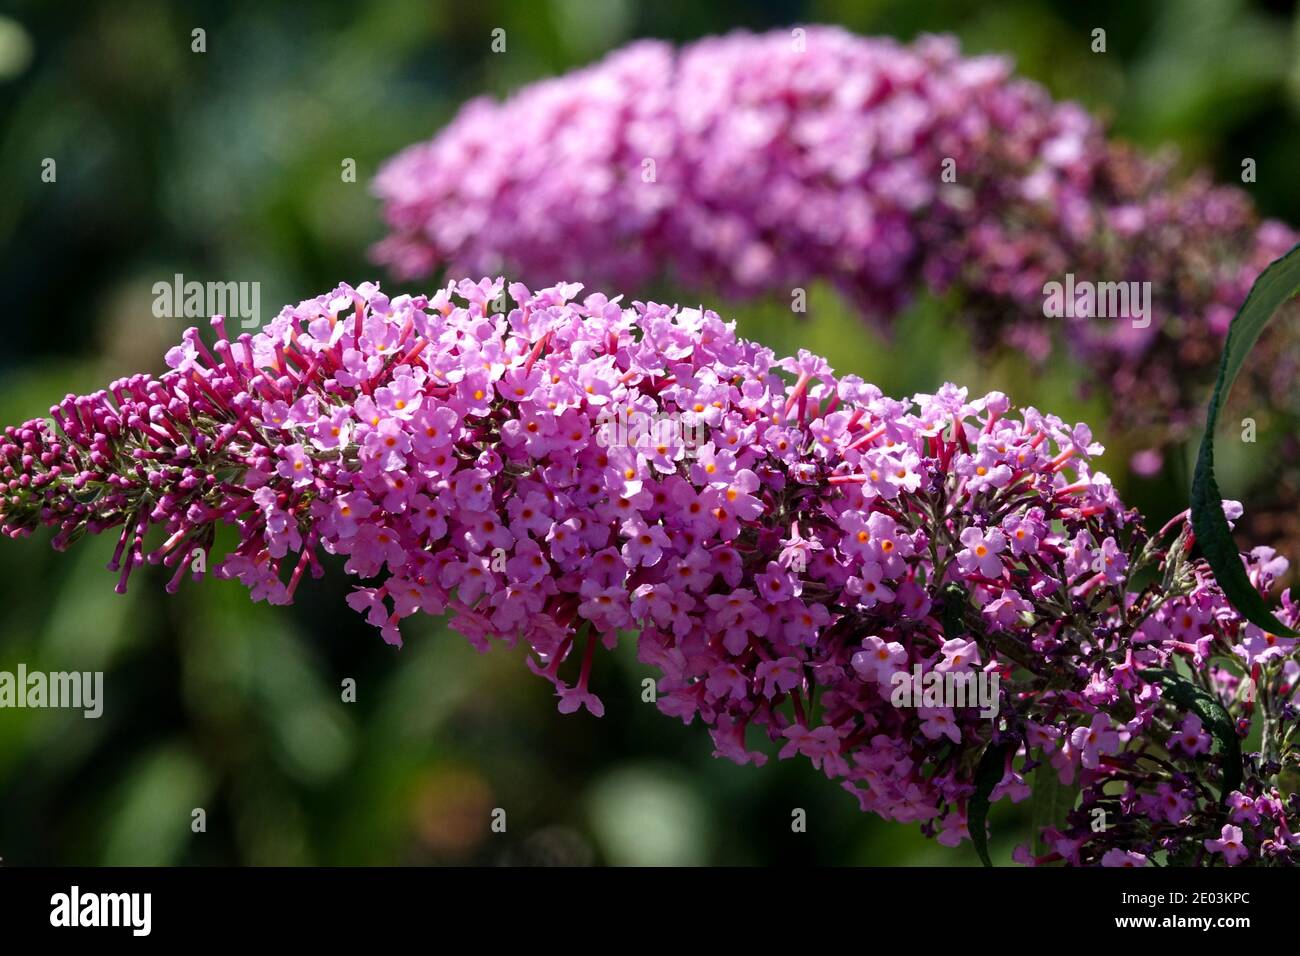 Buddleja 'Pink Delight' Butterfly bush pink flower Stock Photo